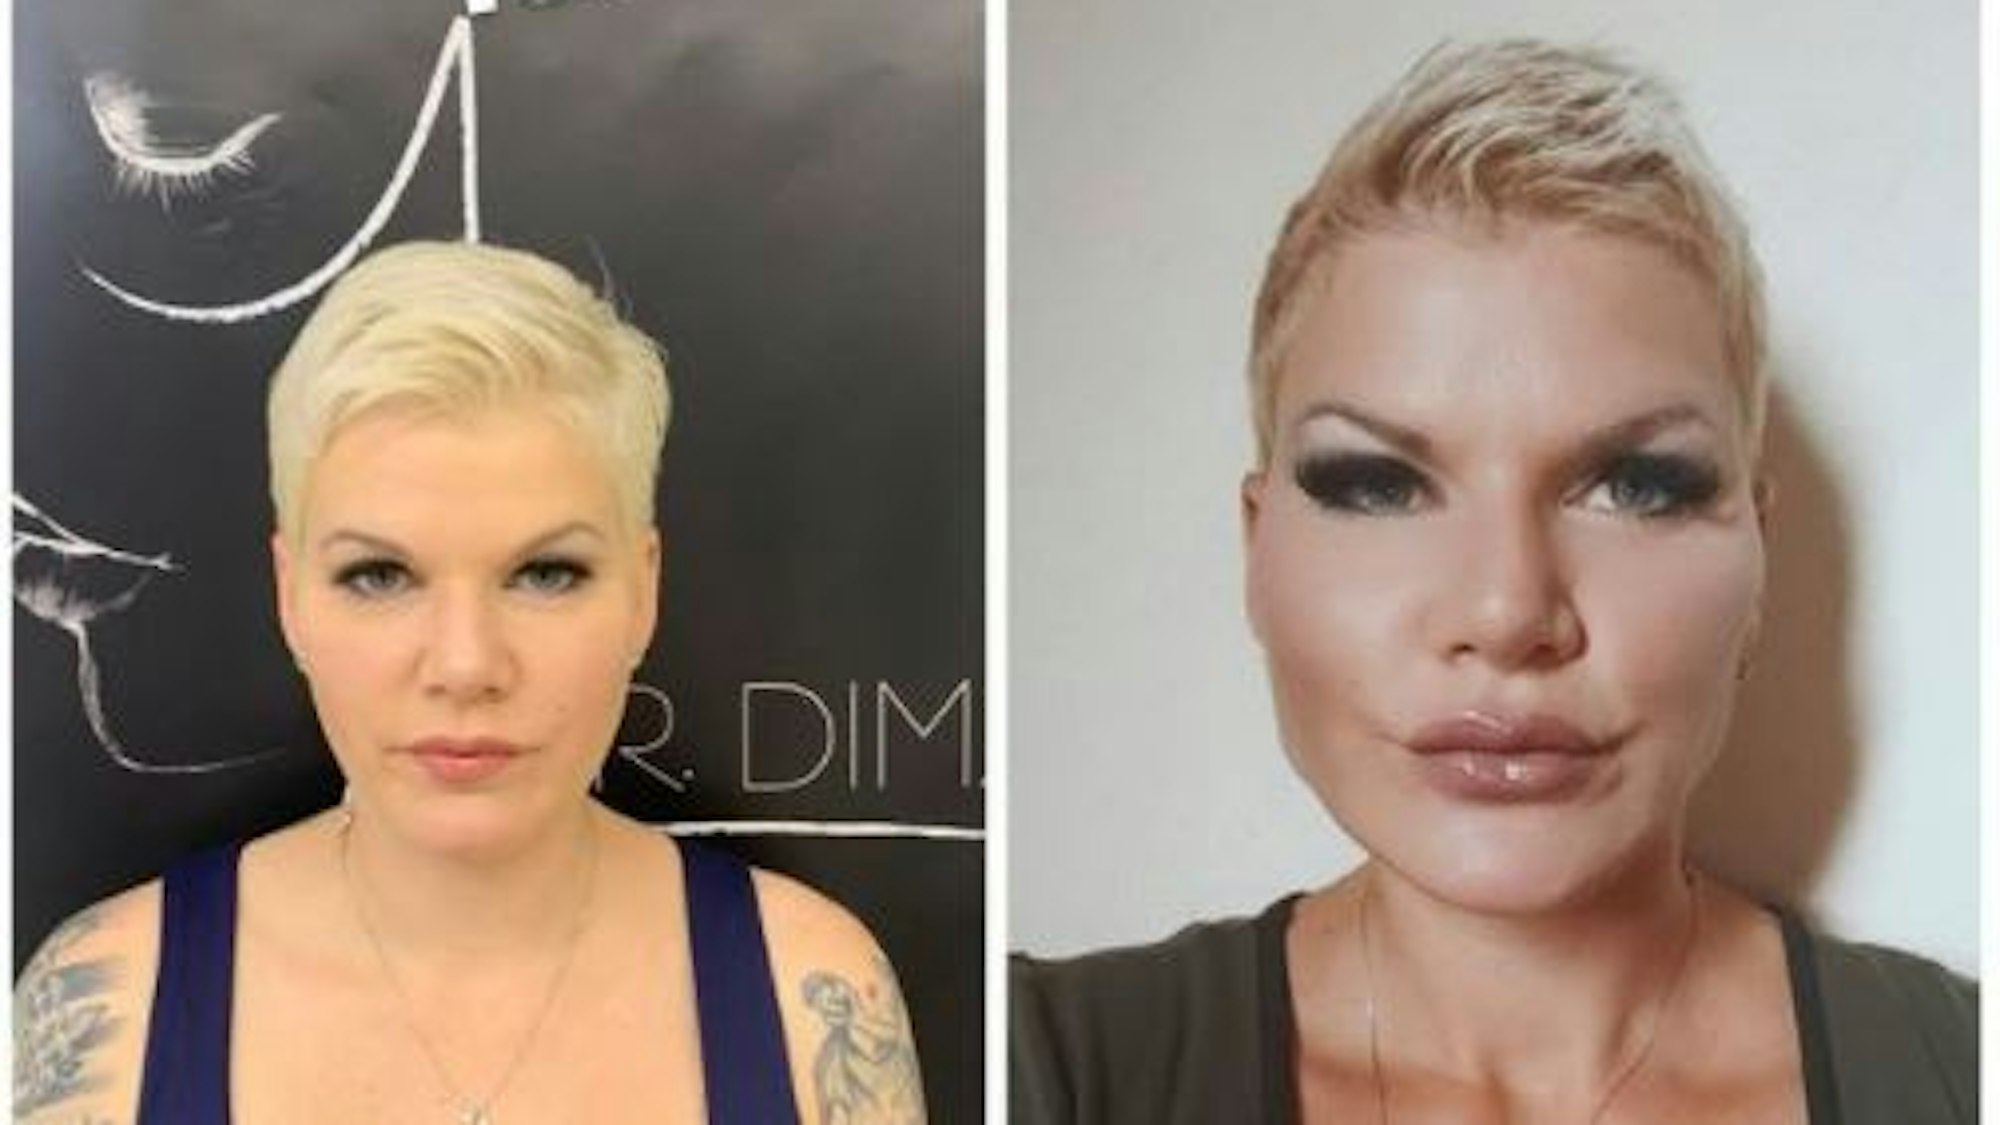 20. Juli 2021: Melanie Müller hat dieses Foto in ihrer Instagram-Story gepostet. Es zeigt einen Vorher-Nachher-Vergleich nach ihrem jüngsten Beauty-Eingriff im Gesicht.